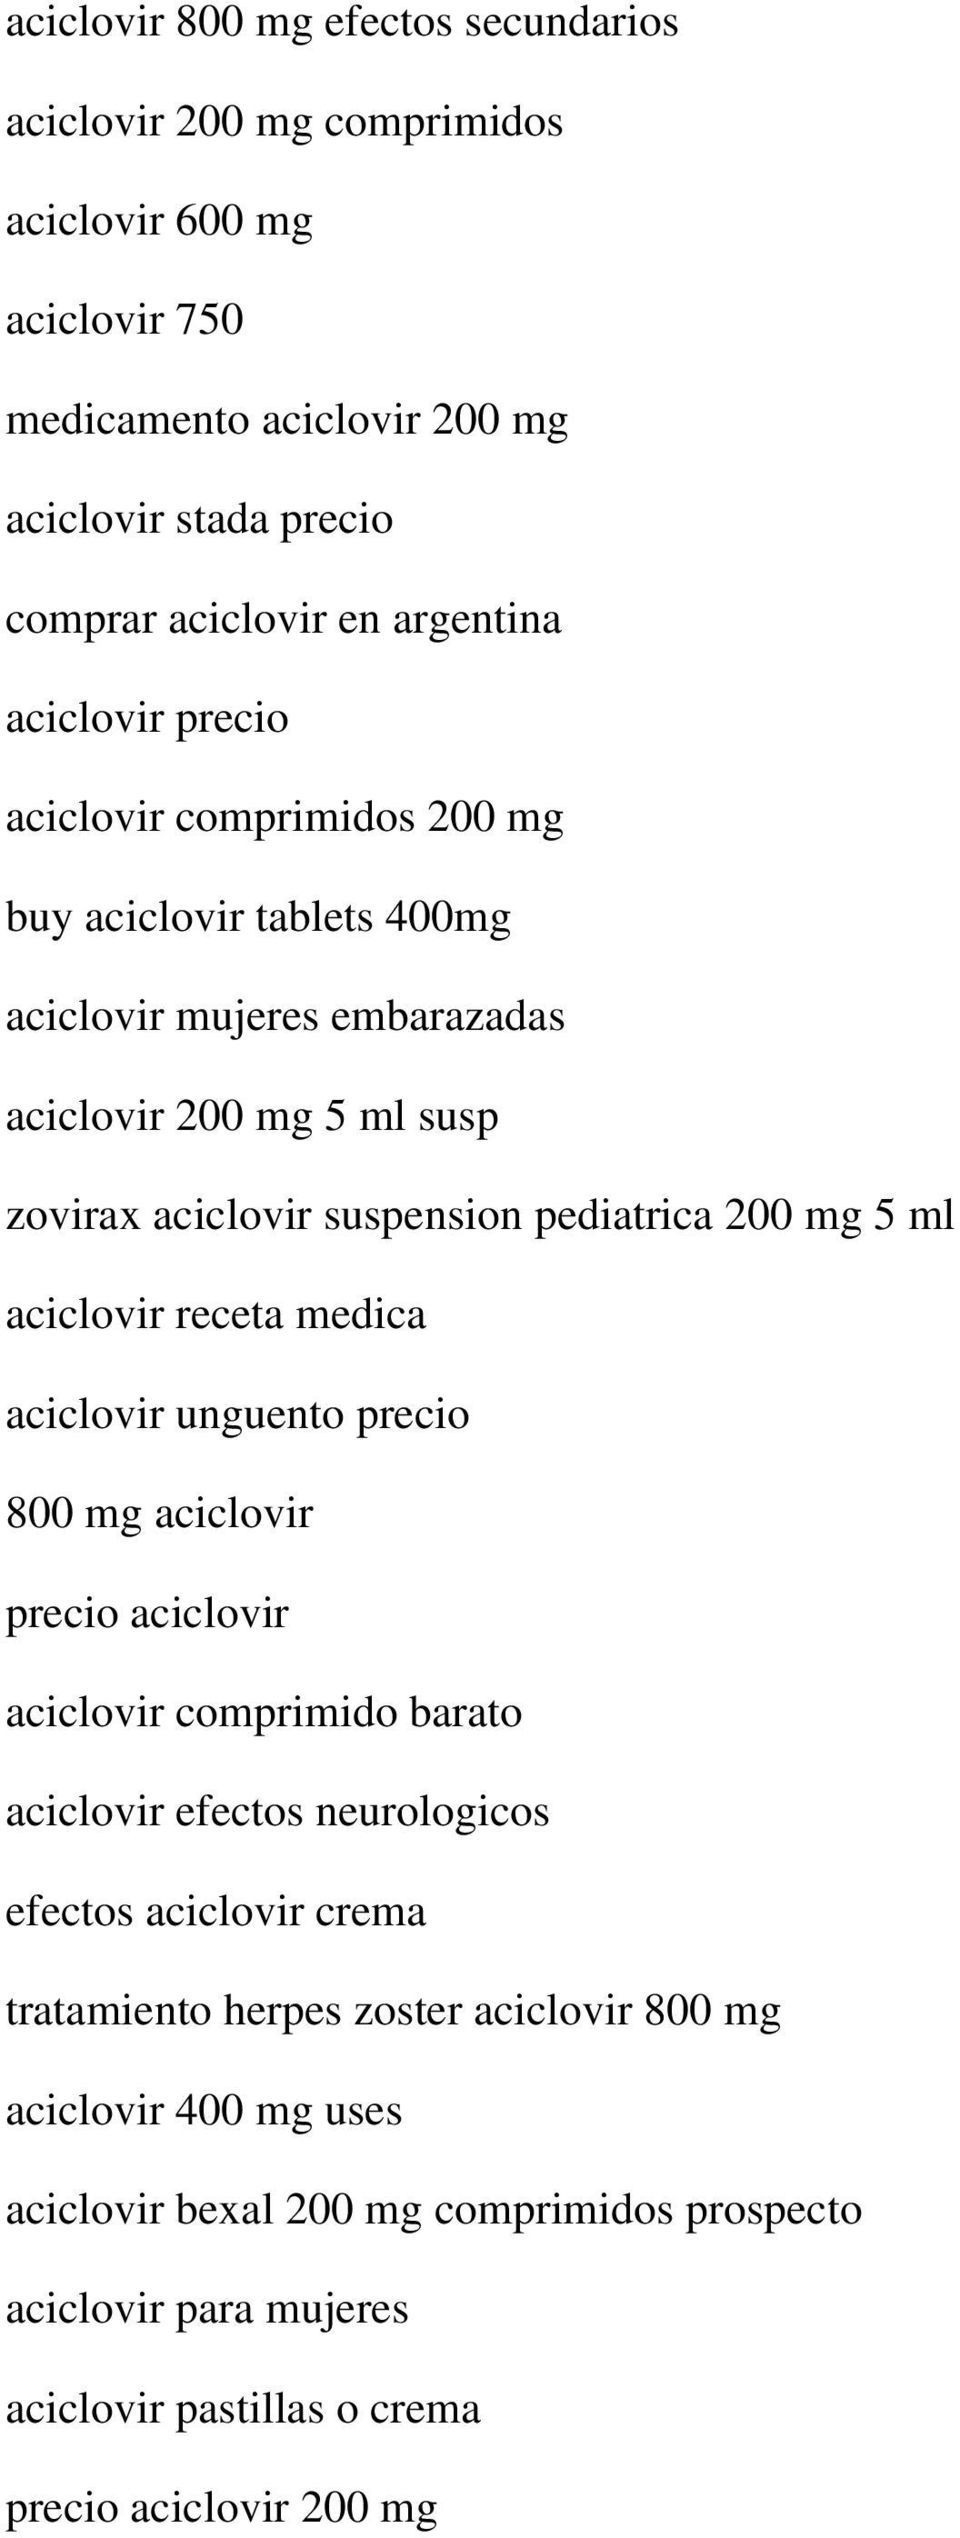 pediatrica 200 mg 5 ml aciclovir receta medica aciclovir unguento precio 800 mg aciclovir precio aciclovir aciclovir comprimido barato aciclovir efectos neurologicos efectos